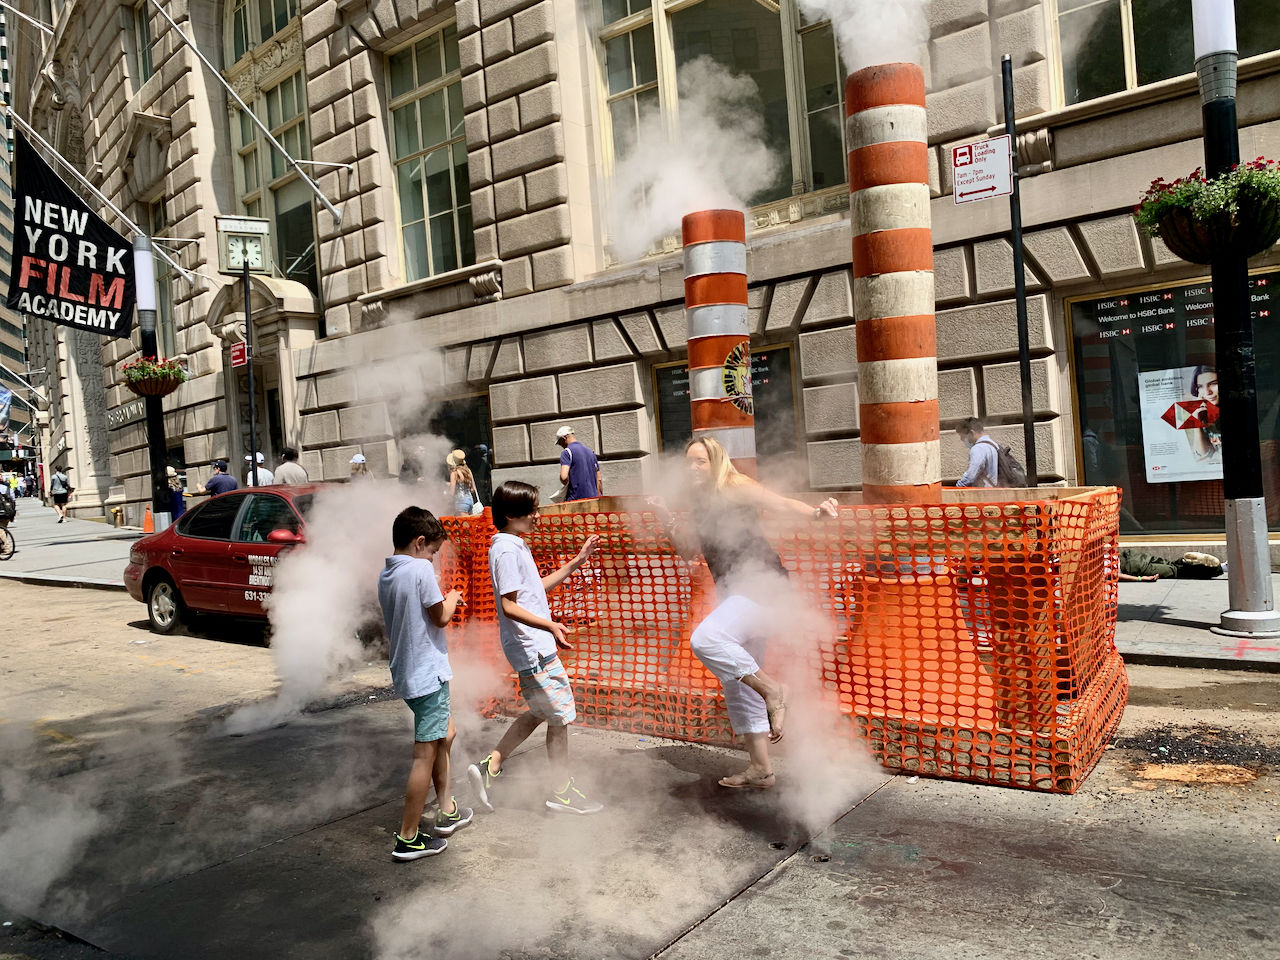 Enfants jouant dans les fameuses fumées s'échappant des rues new-yorkaises !